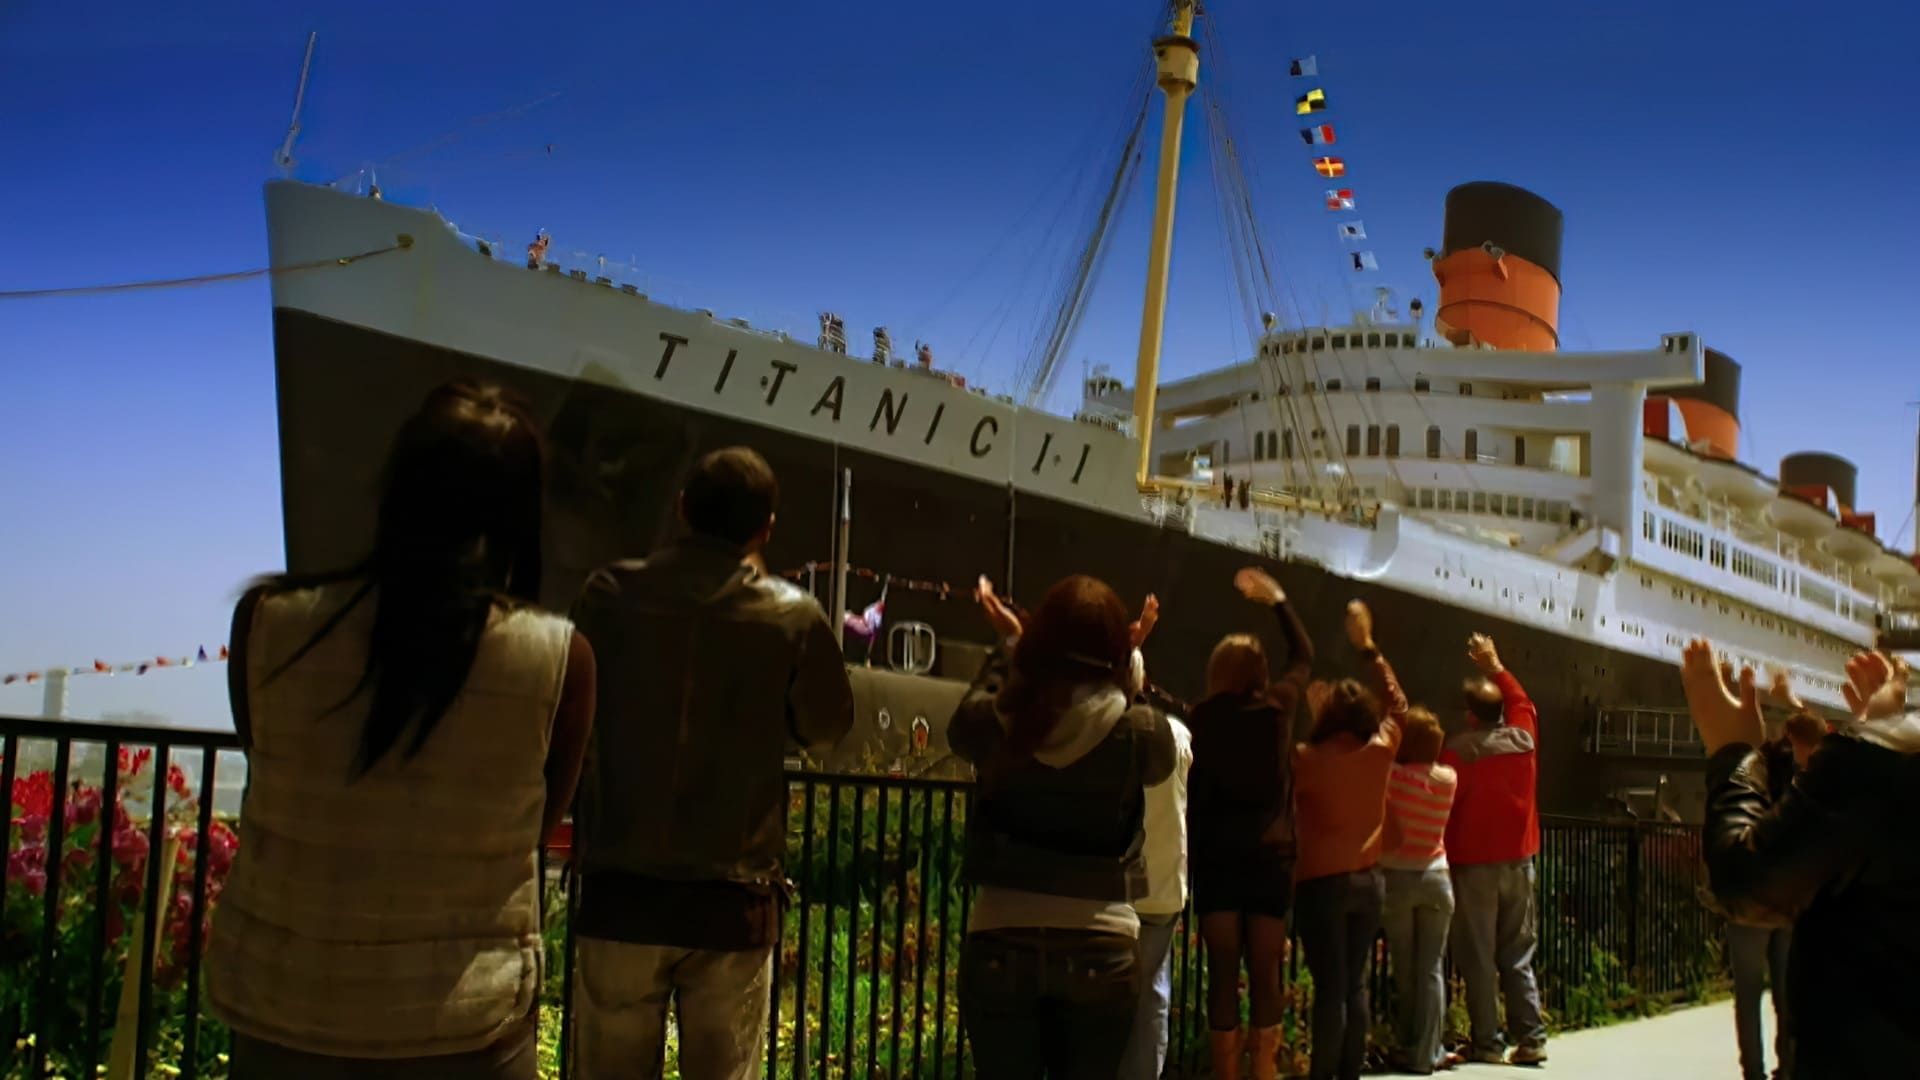 Titanic II background